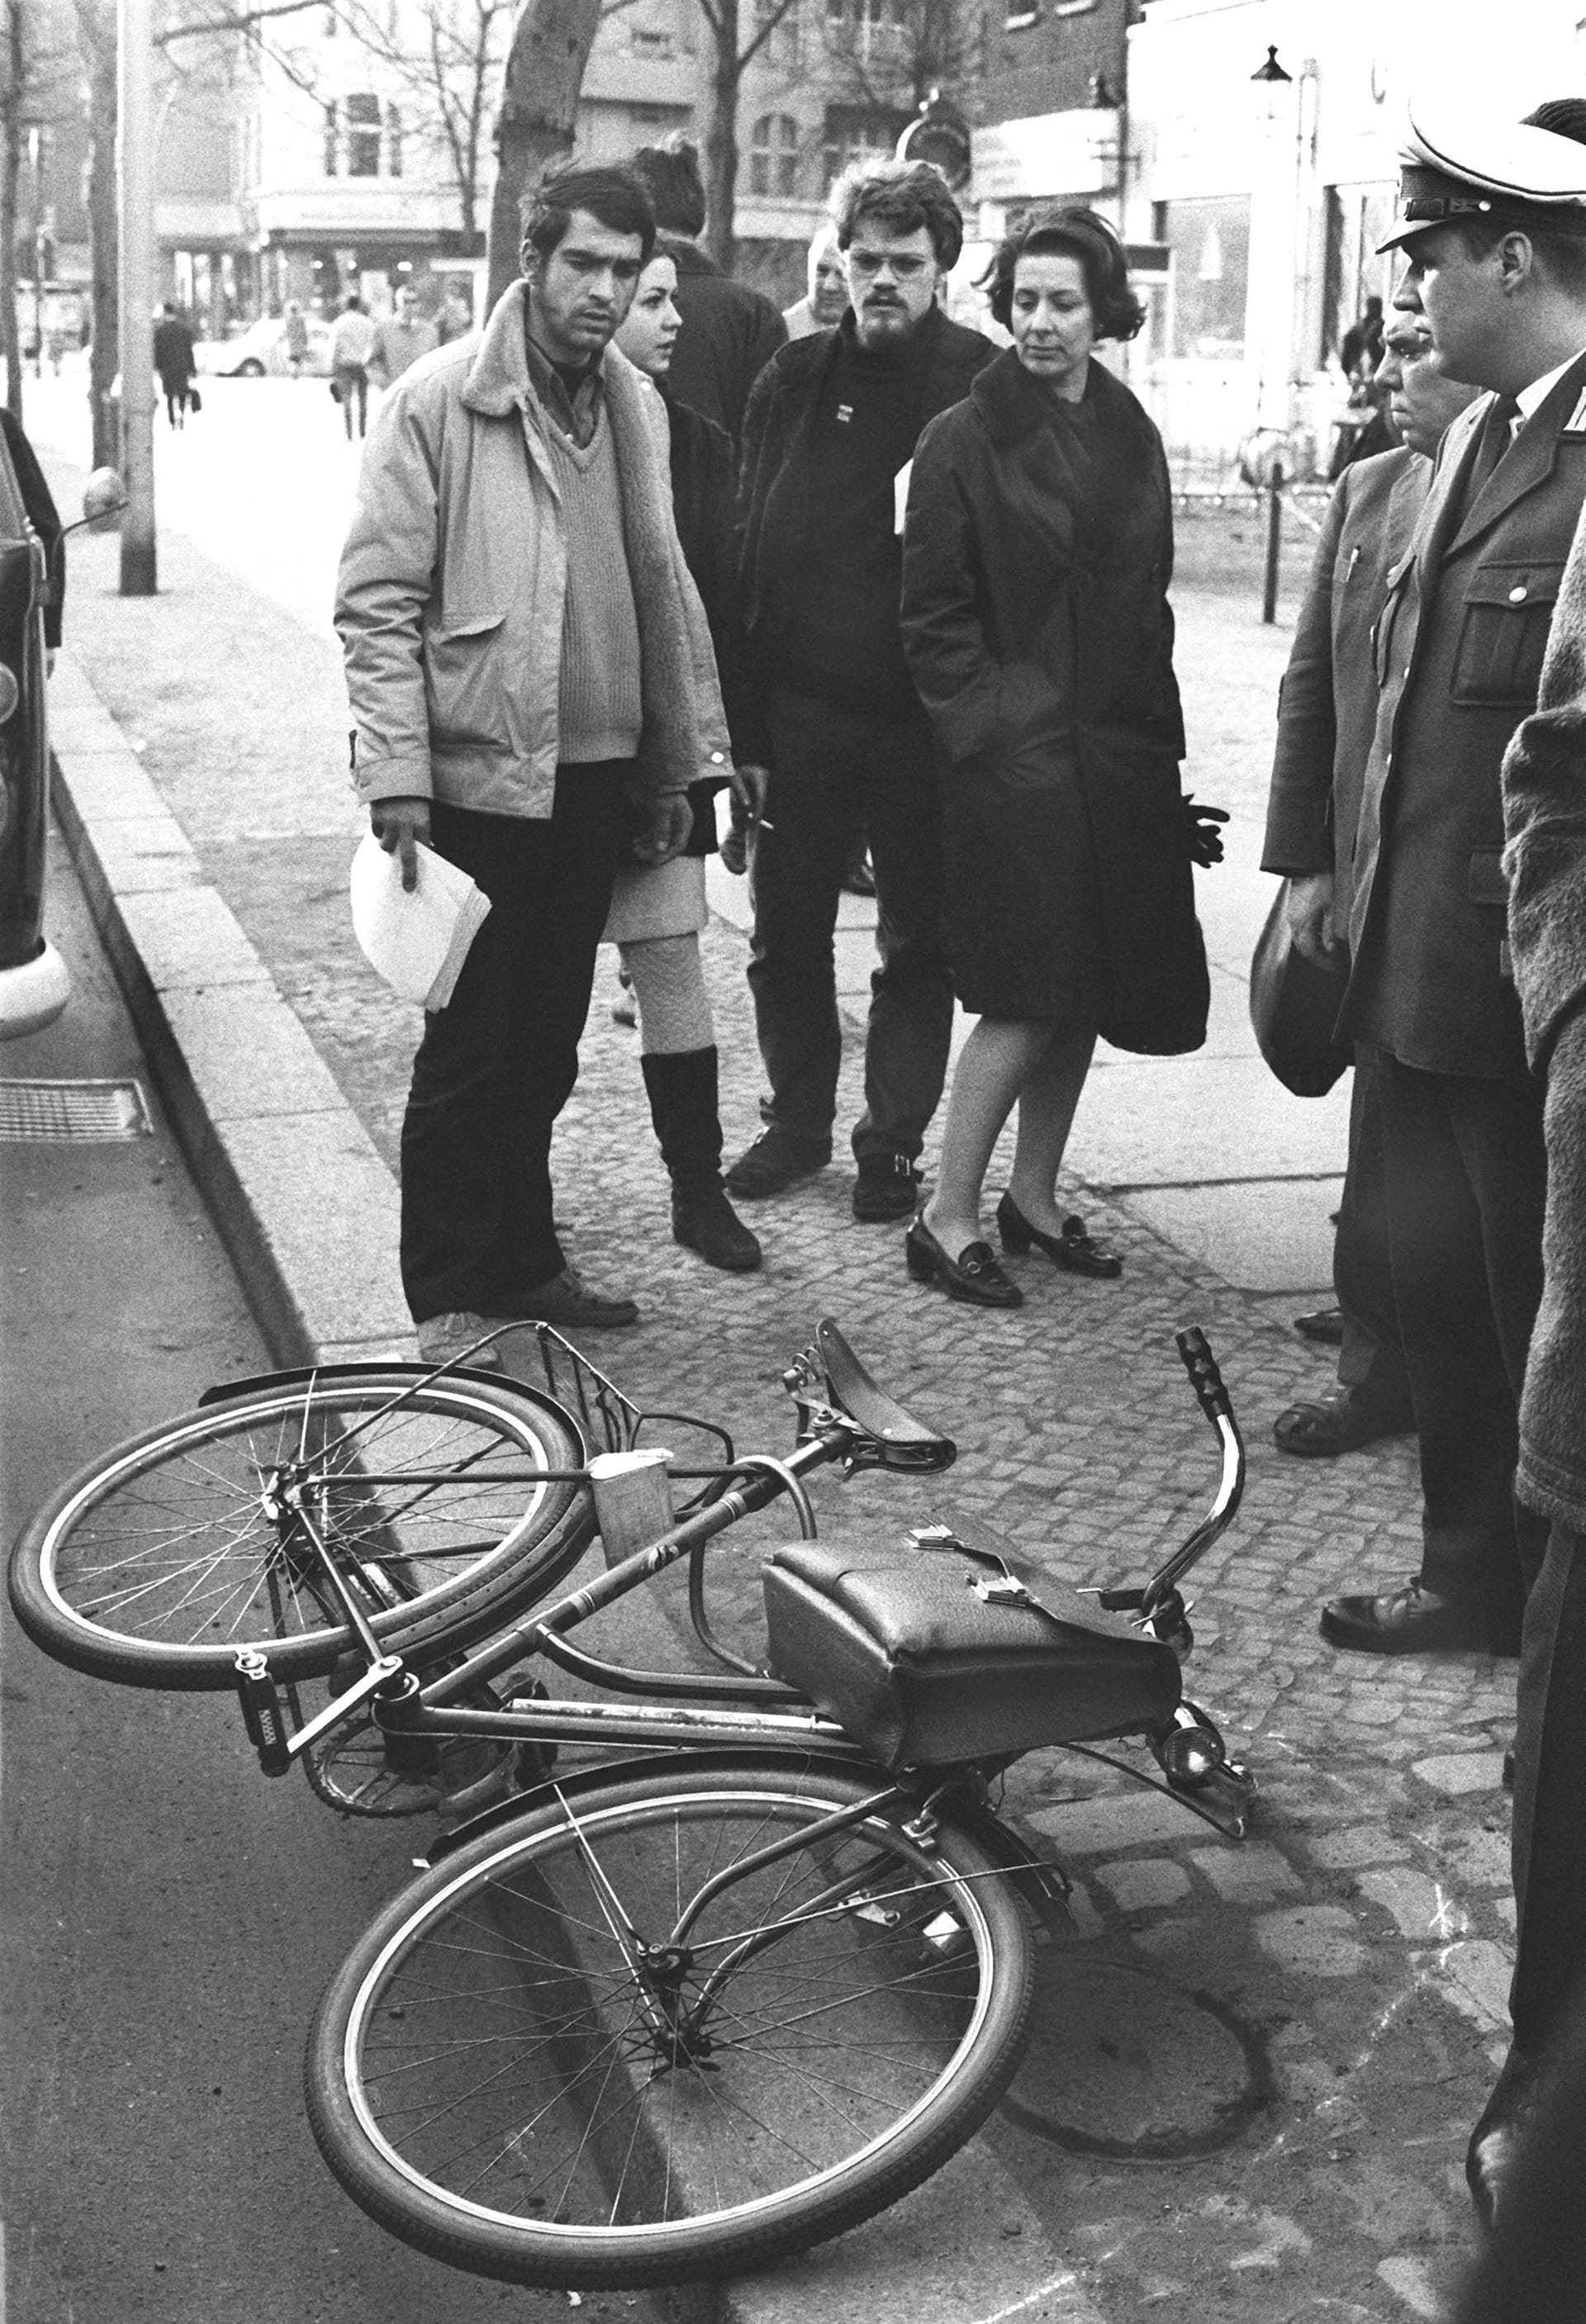 Das Fahrrad von Rudi Dutschke. Beim Anschlag auf ihn, wollte er am Ku'damm Nasenspray für seinen Sohn kaufen.